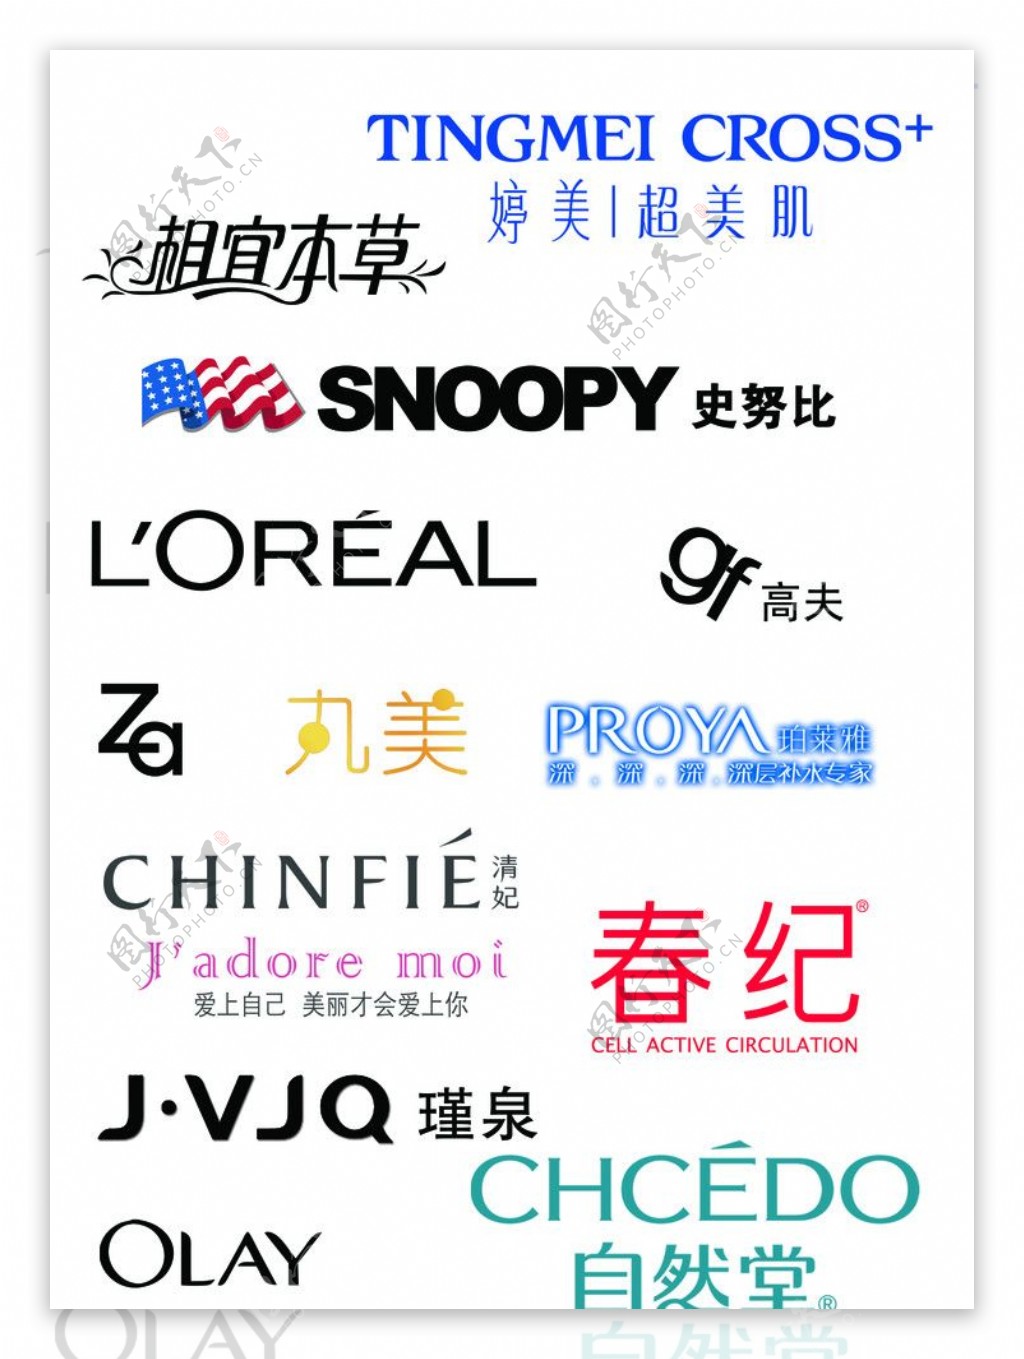 绮尚 英文Qi Shang 化妆品品牌logoLOGO设计 - LOGO123